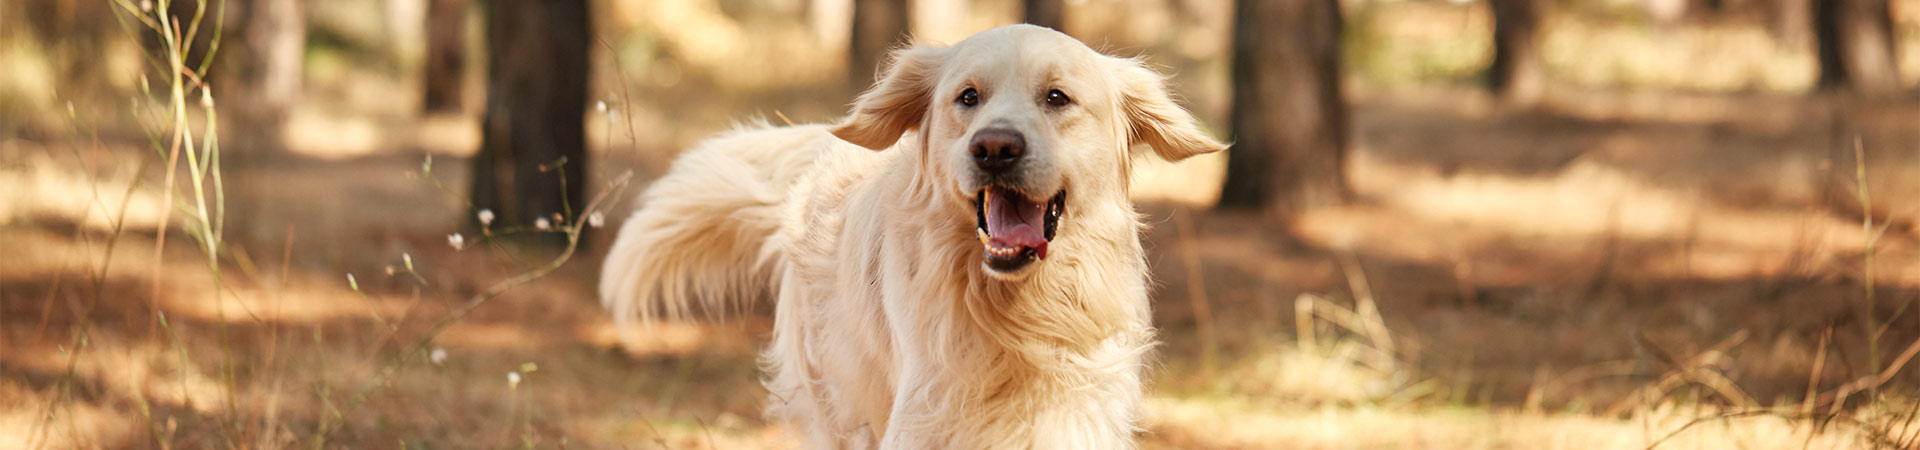 Avere un cane per la prima volta: Golden Retriever corre libero in un bosco.